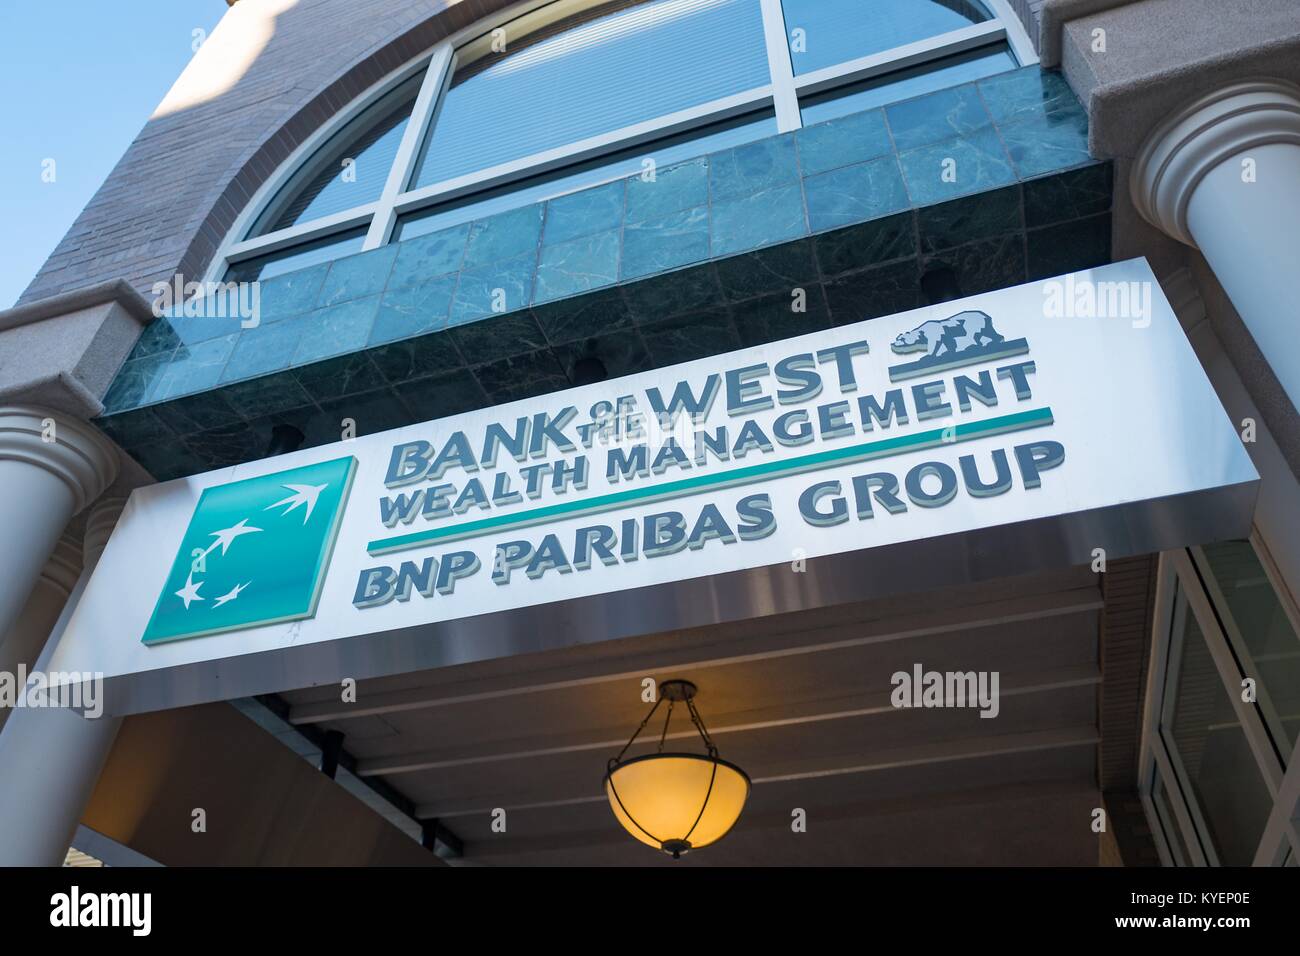 Logo pour signer avec la direction générale de la gestion de patrimoine de la Banque de l'Ouest, une division du groupe BNP Paribas, au large de l'avenue University dans la Silicon Valley, à Palo Alto, Californie, le 14 novembre 2017. () Banque D'Images